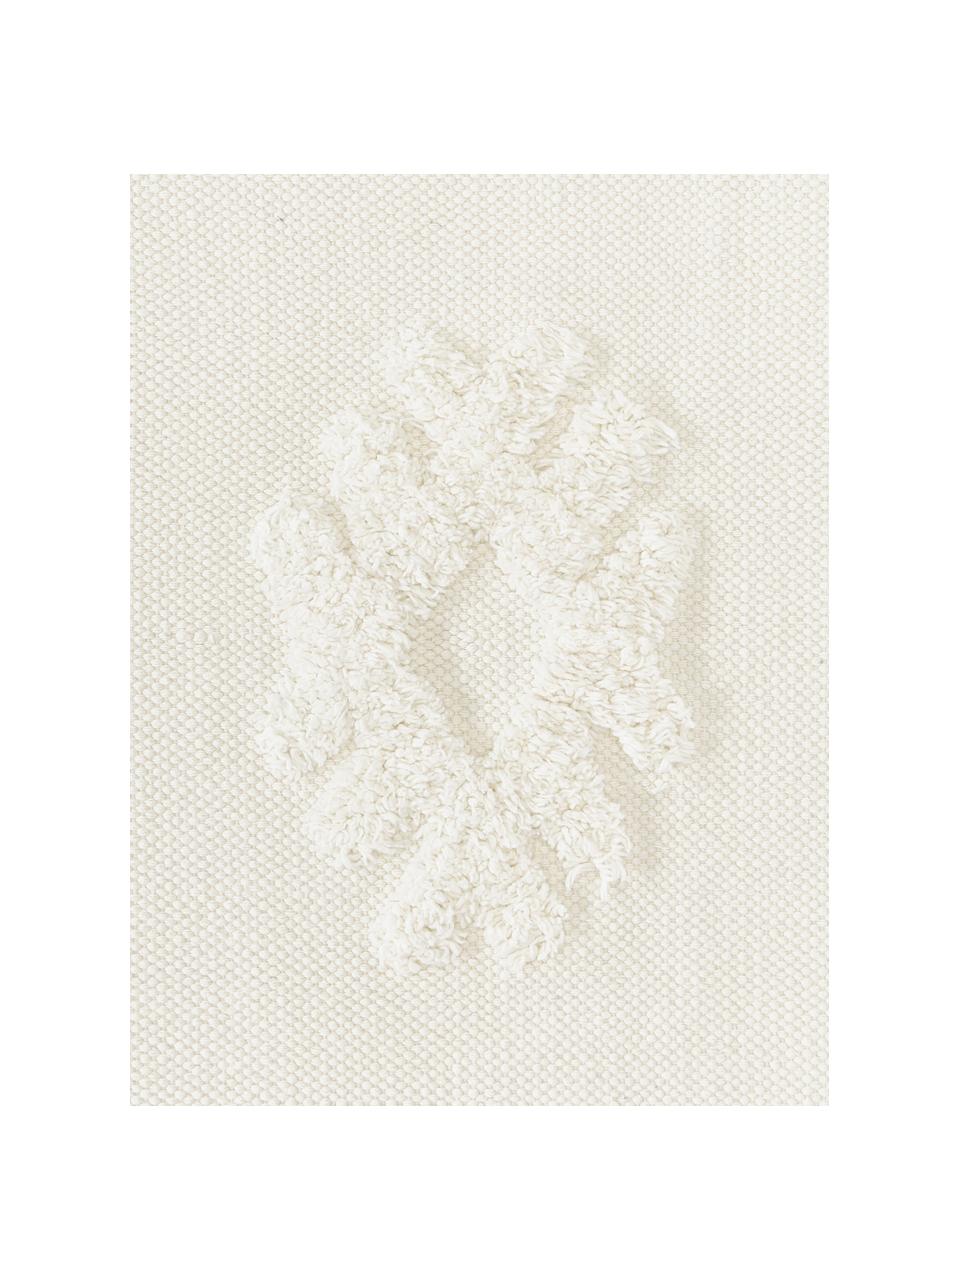 Tappeto in cotone tessuto a mano con struttura alta-bassa con frange Fenna, 100% cotone, Bianco crema, Larg. 80 x Lung. 150 cm (taglia XS)